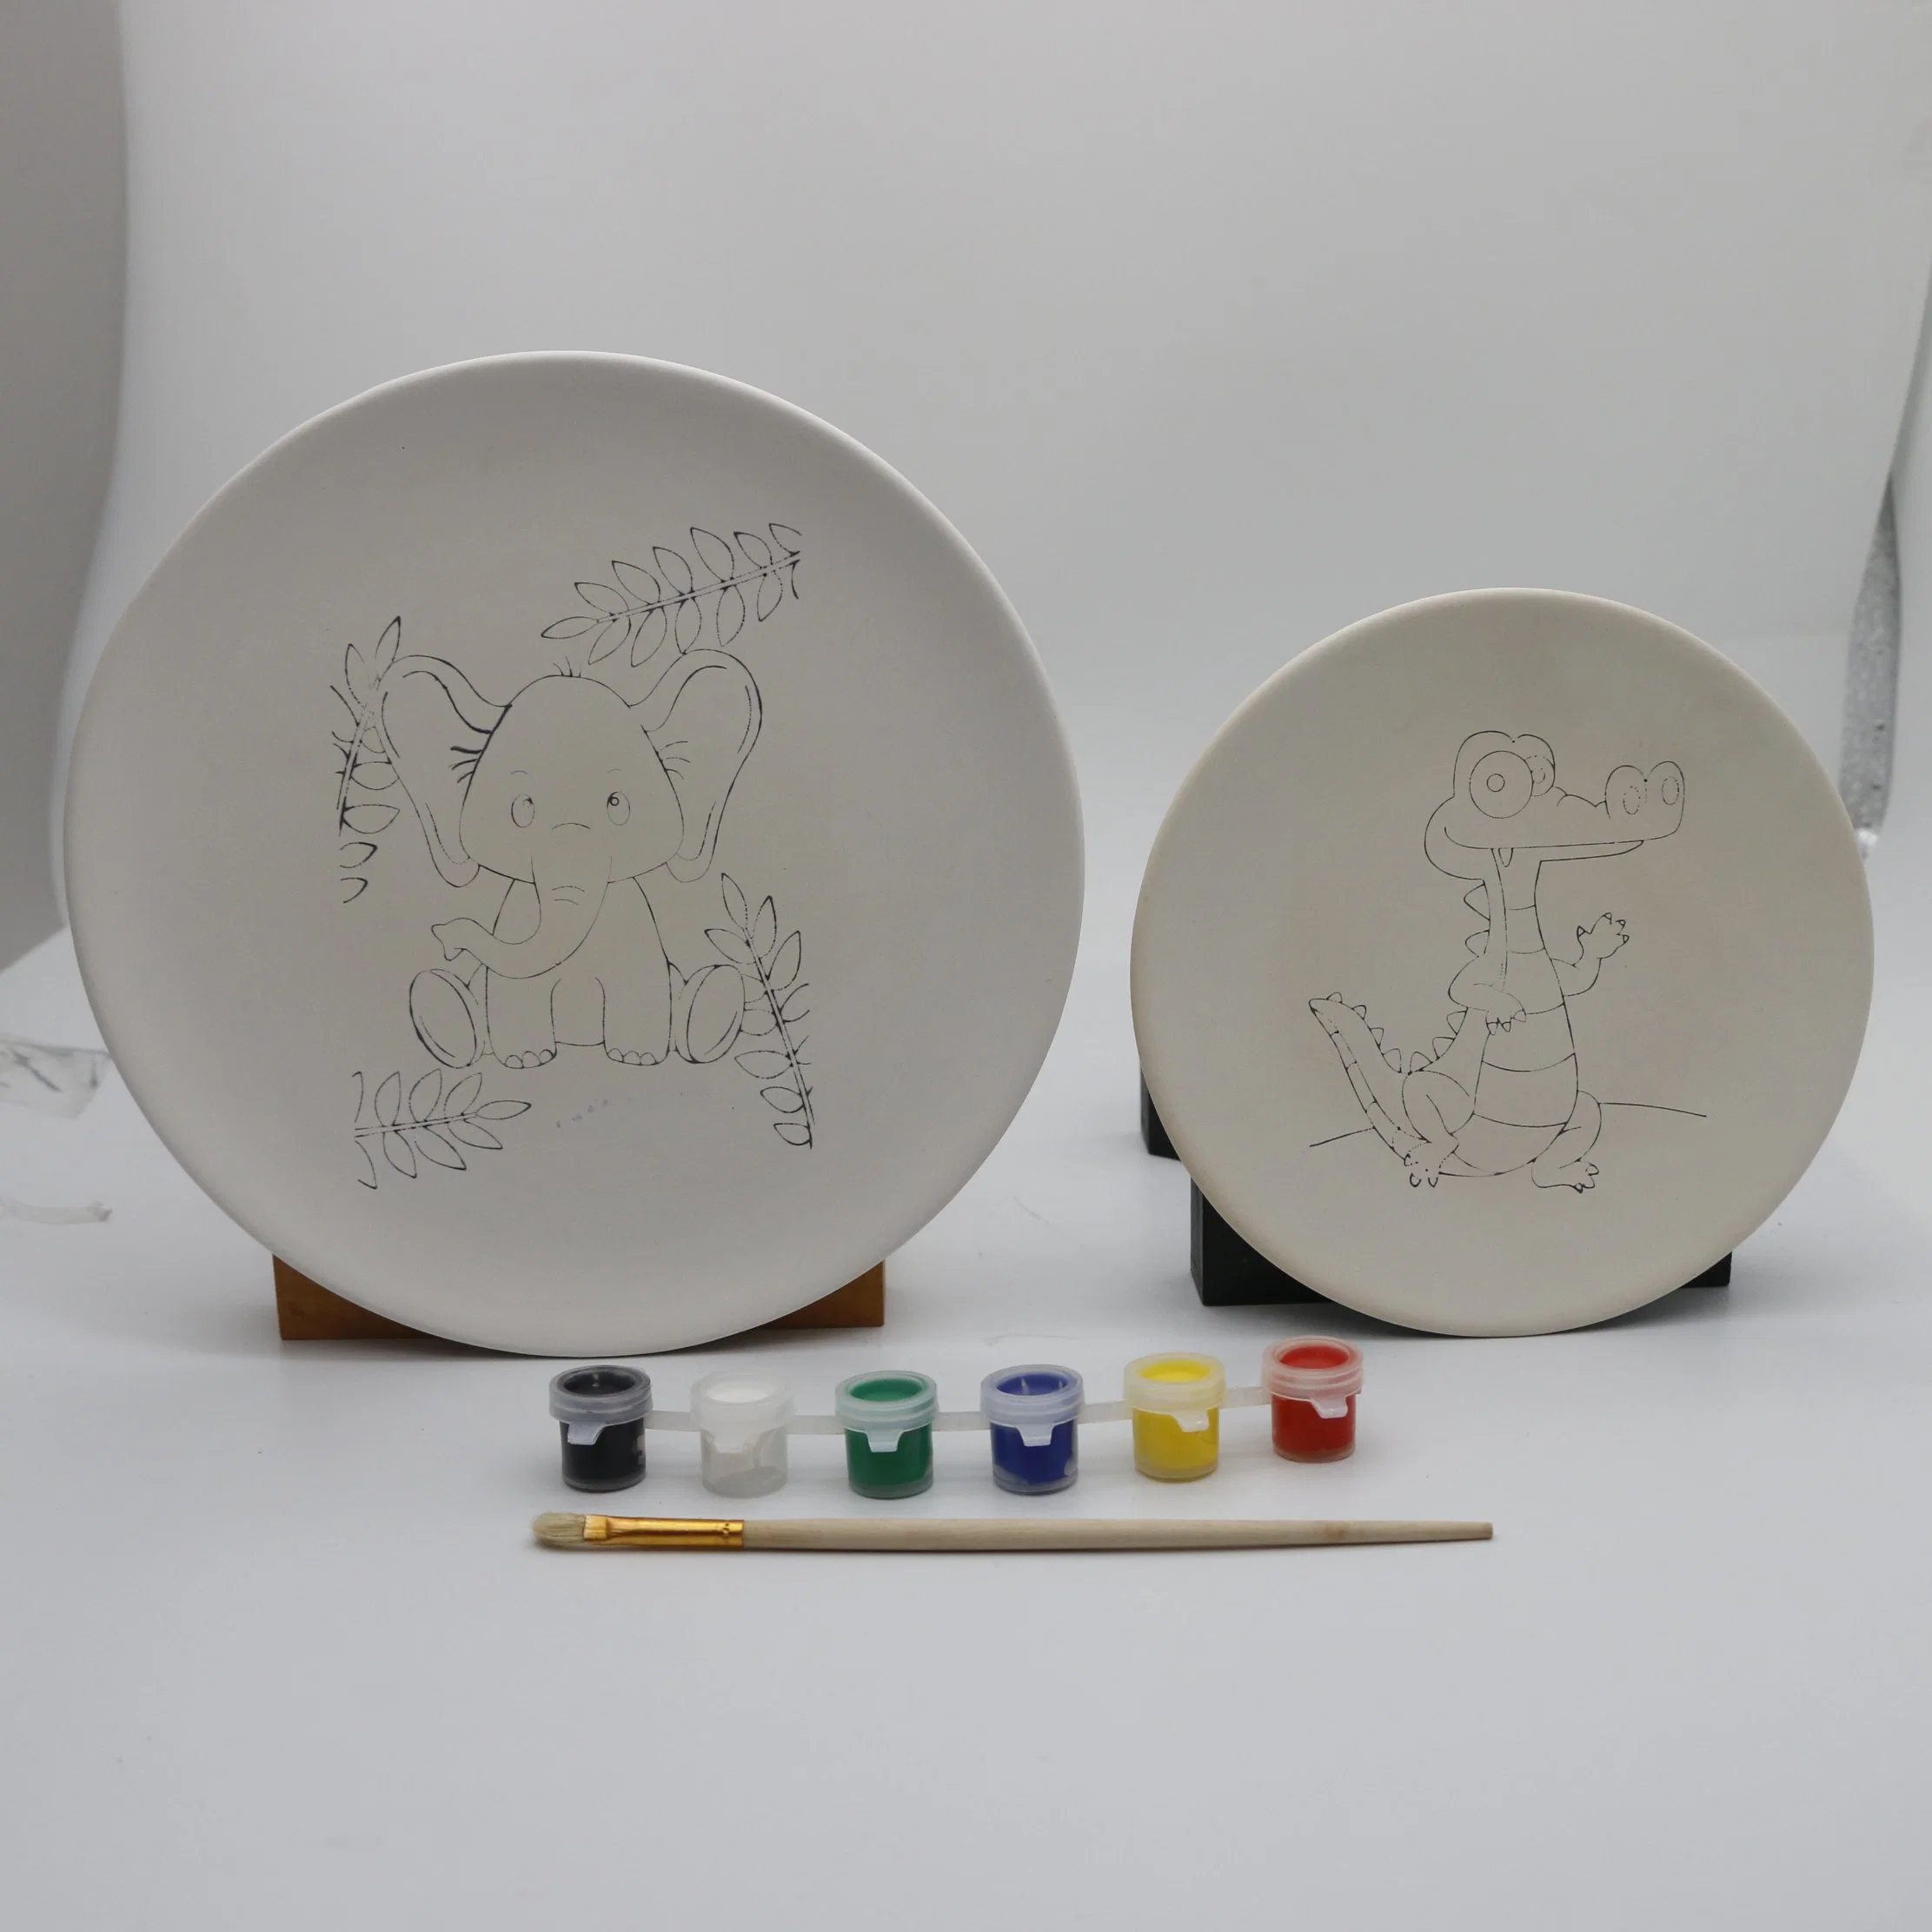 مجموعة أدوات الرسم الخزفي لزينة الفن والحرف اليدوية للأطفال قم بطلاء لوحتك الخاصة